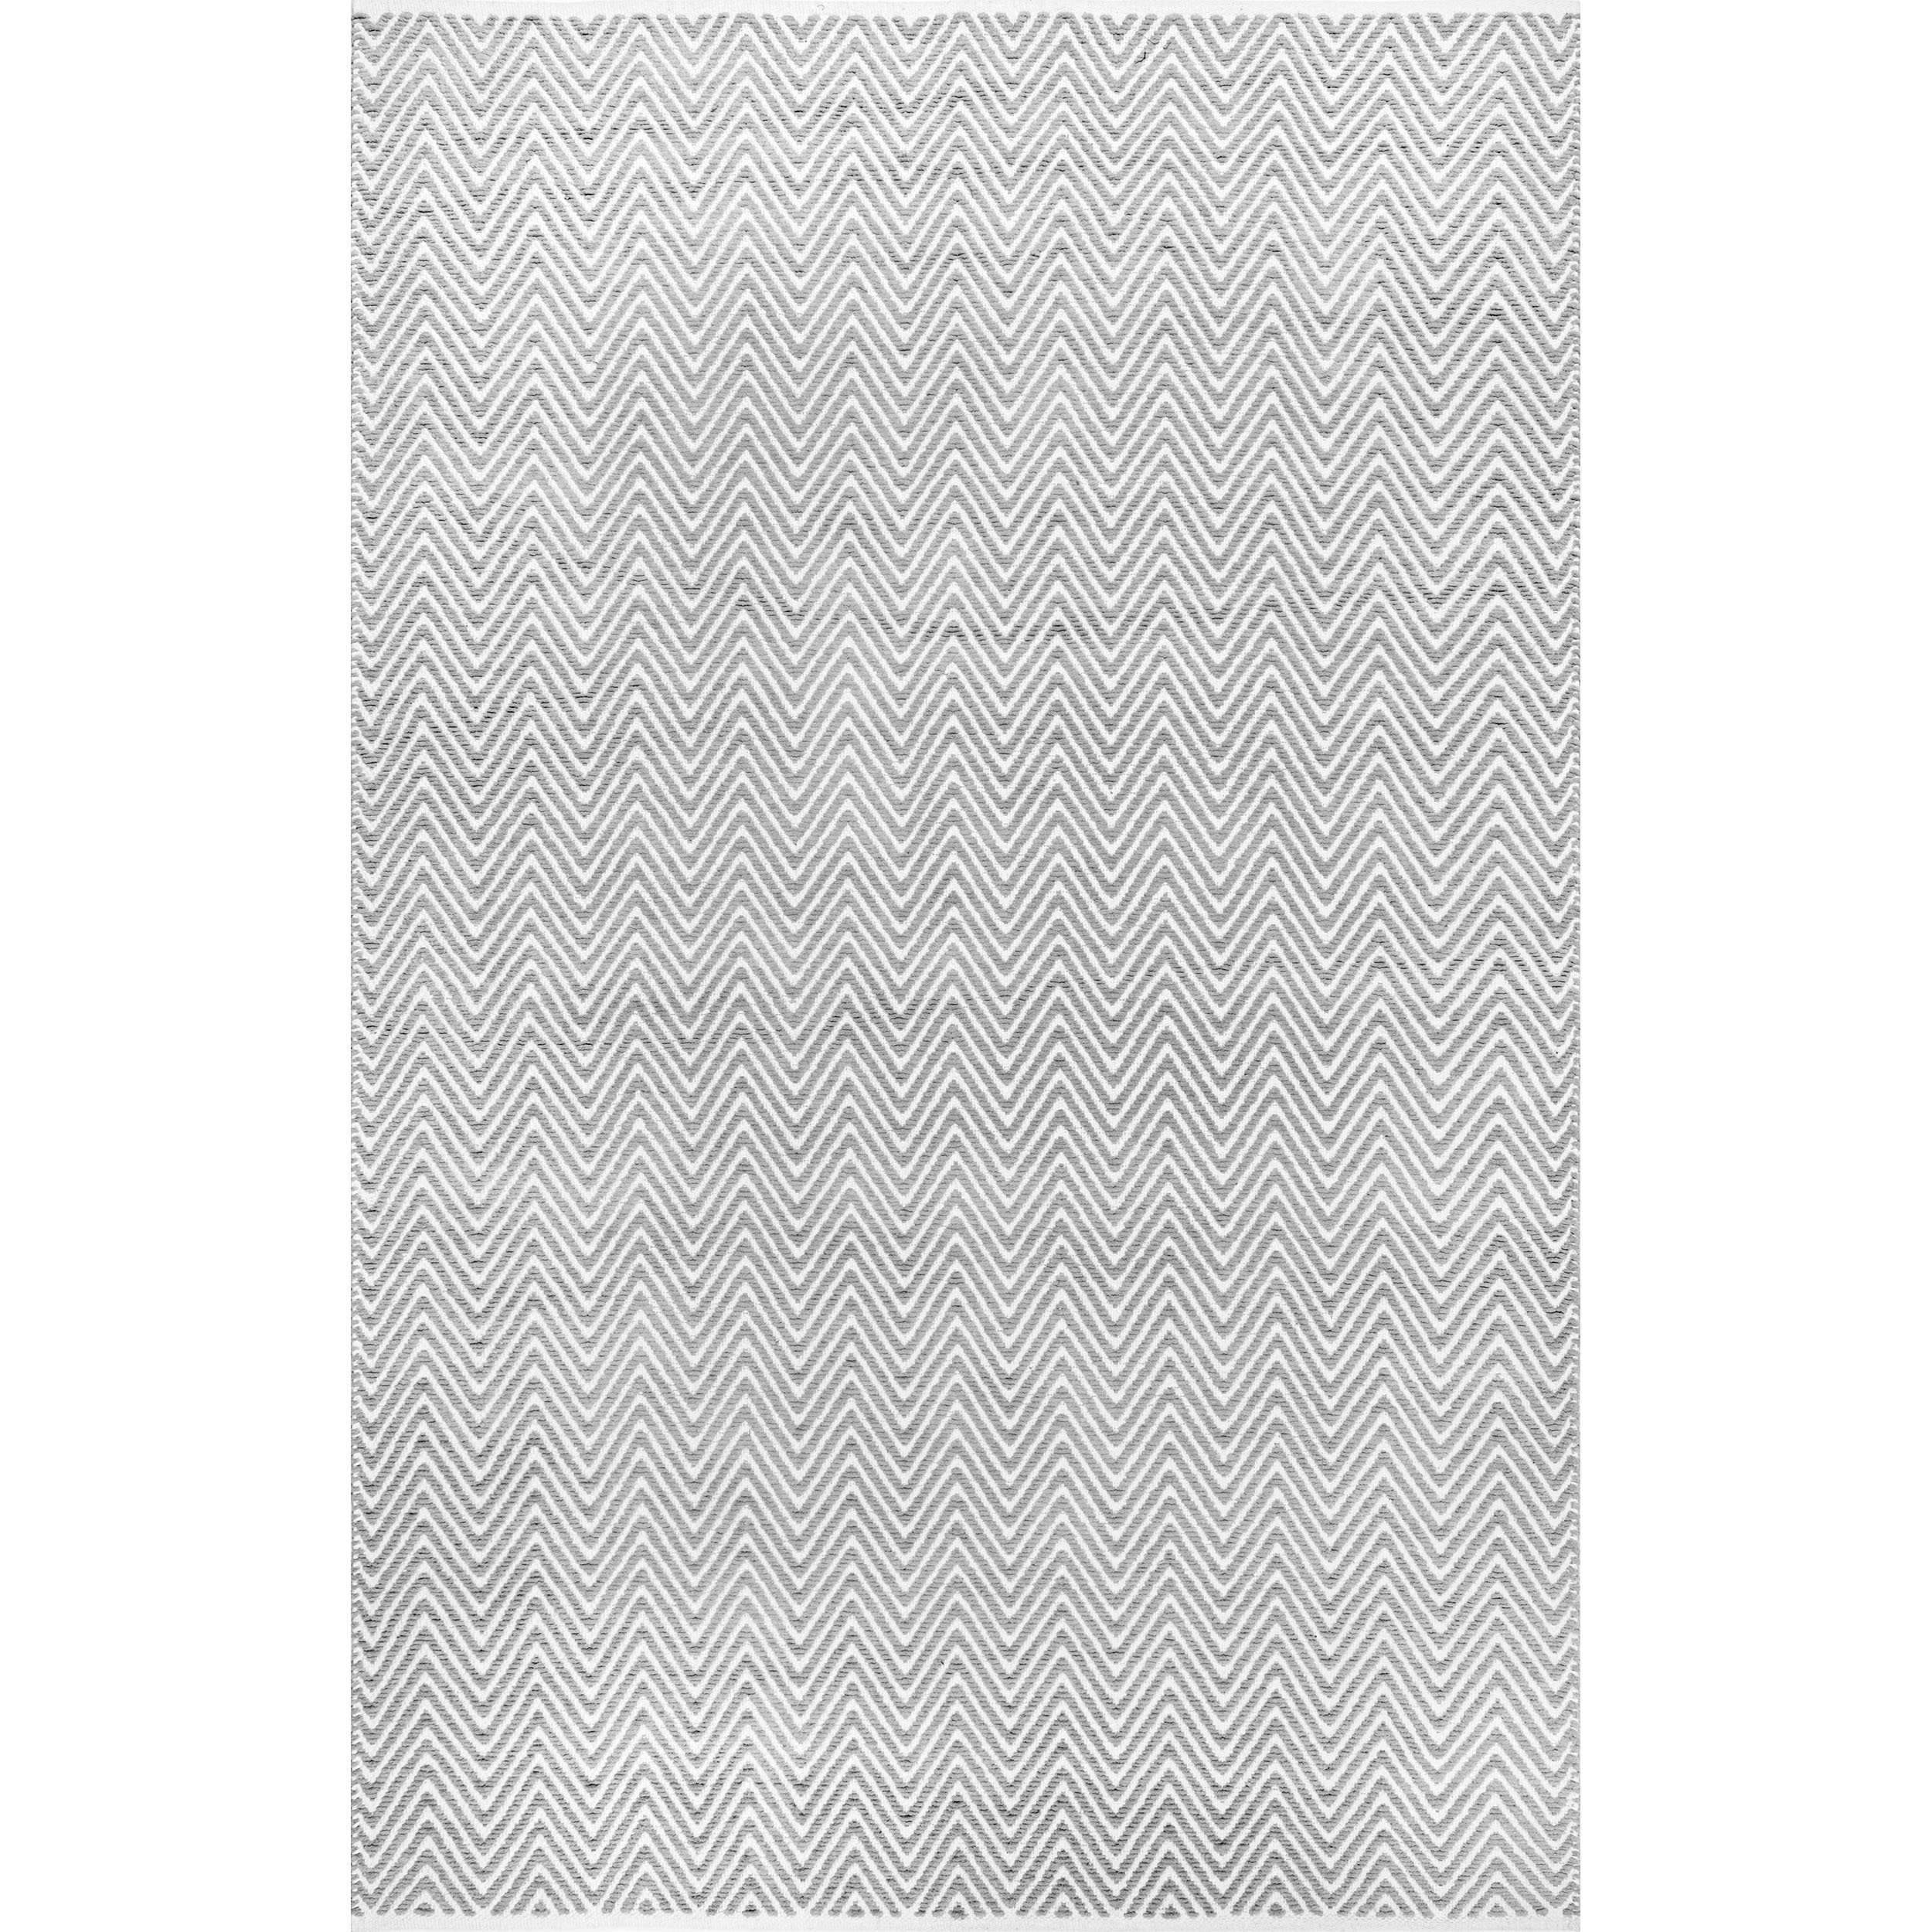 Nala Herringbone Rug - Light Gray - 7'6"x9'6" - Image 0